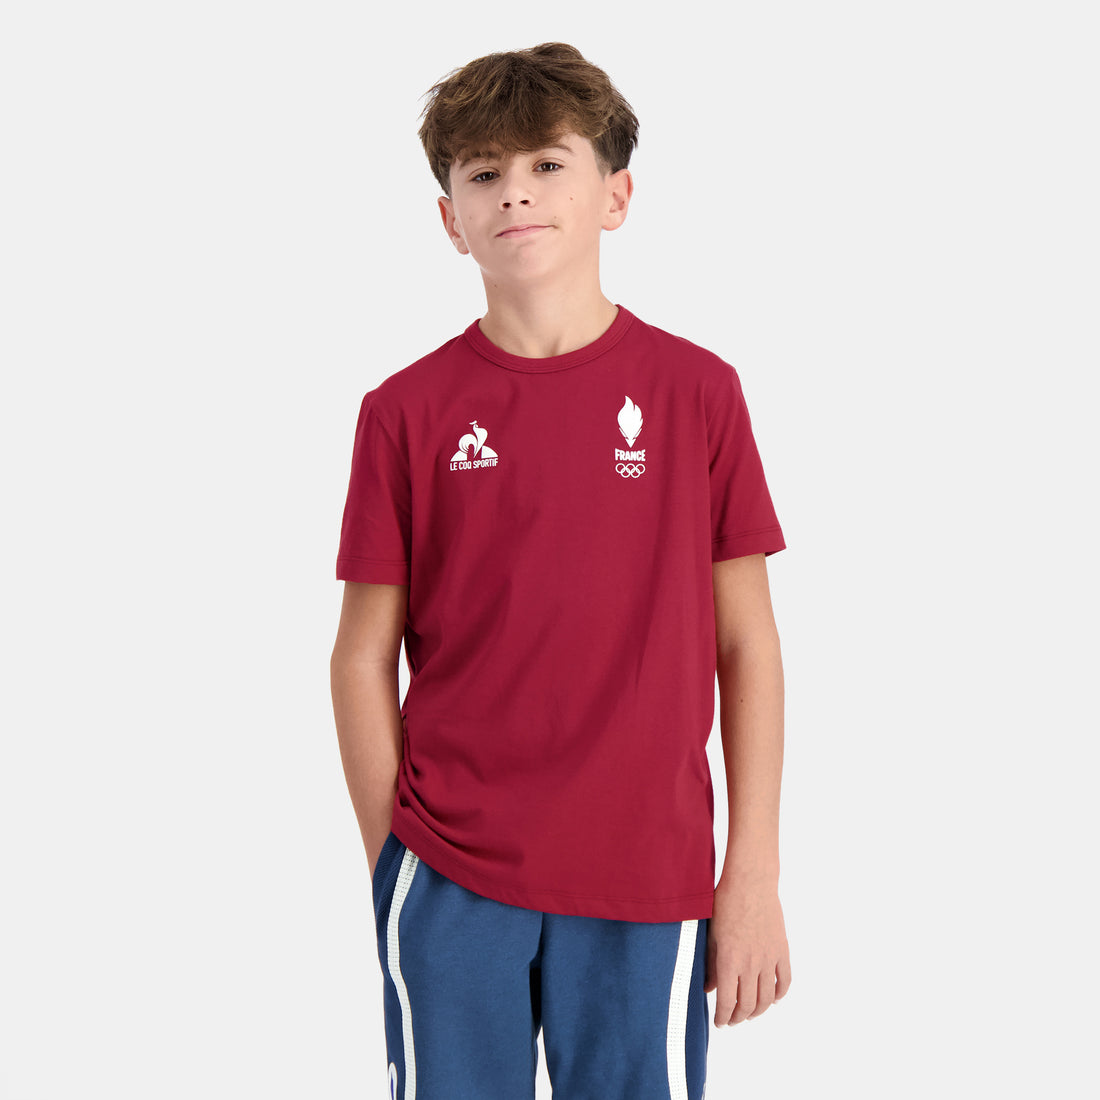 2410089-EFRO 24 Tee SS N°2 Enfant rio red  | Camiseta Niño